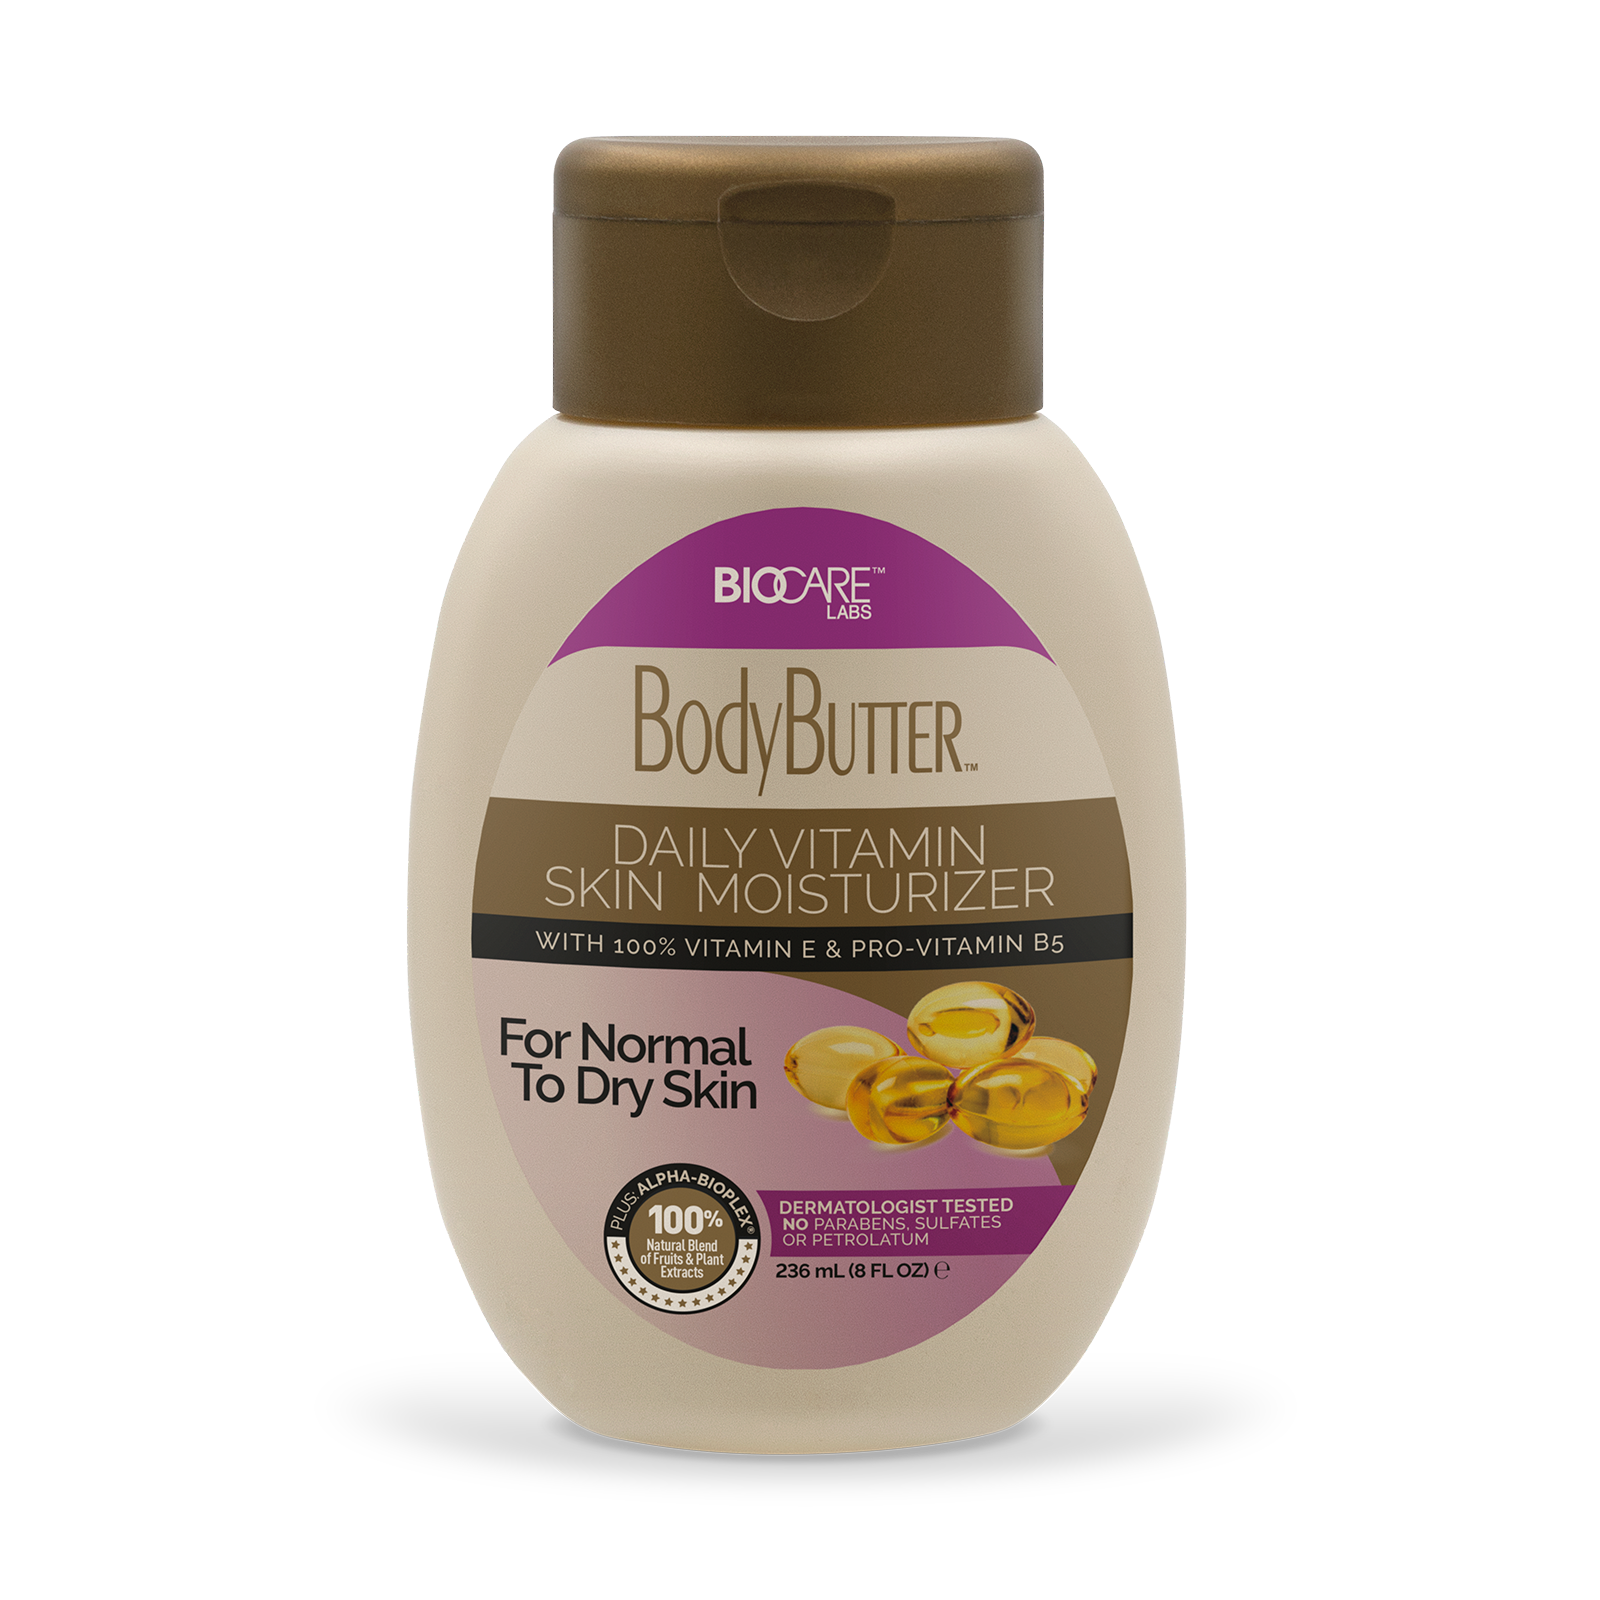 8 oz container of BodyButter™ With Vitamin E & Pro-Vitamin B5